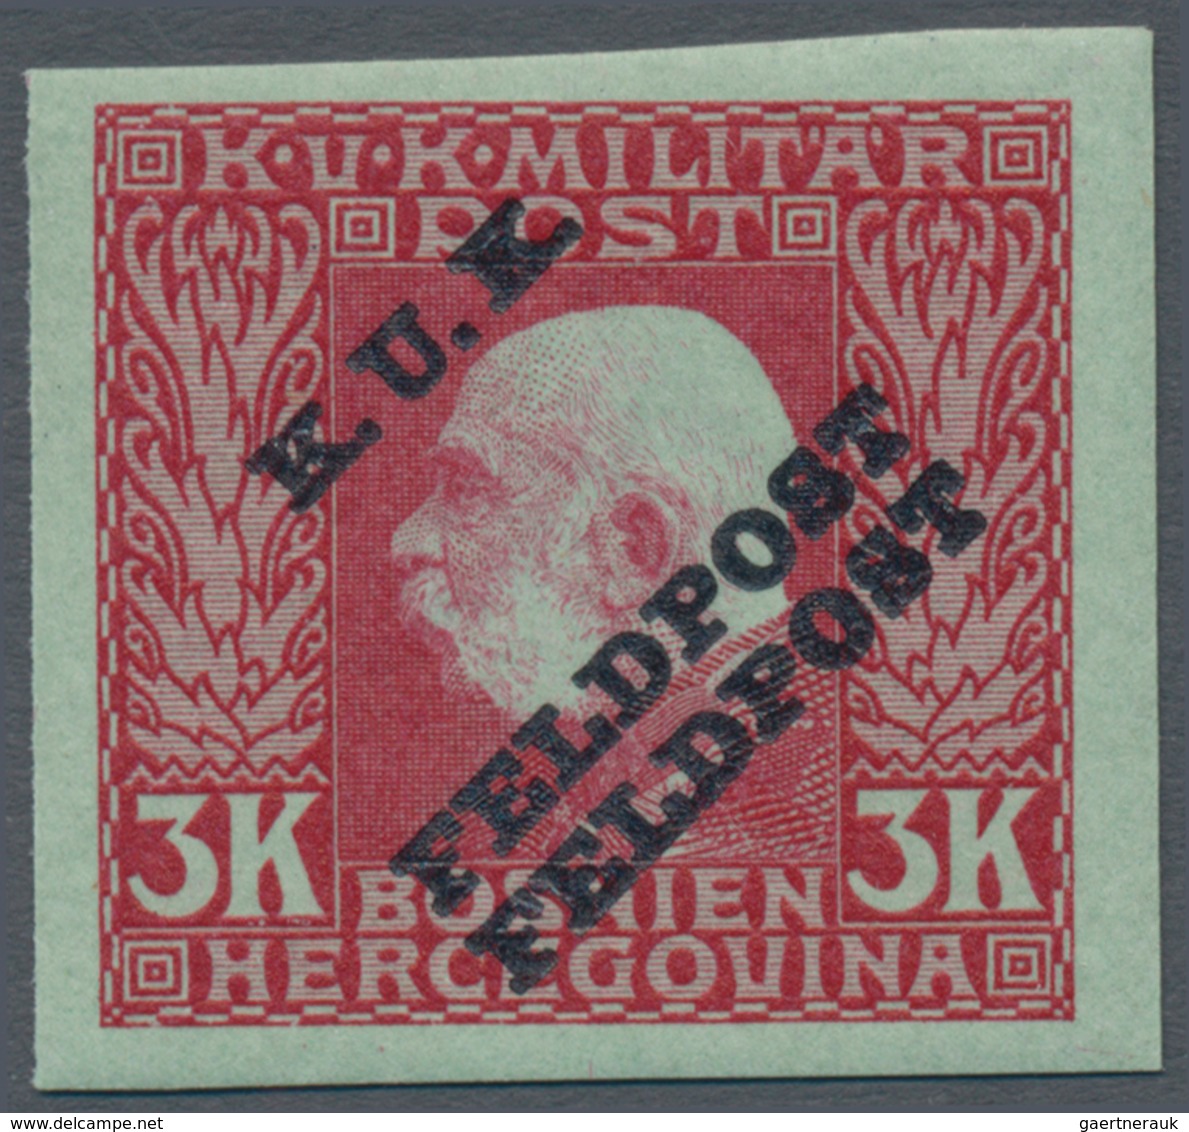 Österreichisch-Ungarische Feldpost - Allgemeine Ausgabe: 1915, 1 H - 10 K Franz Joseph ungezähnt mit